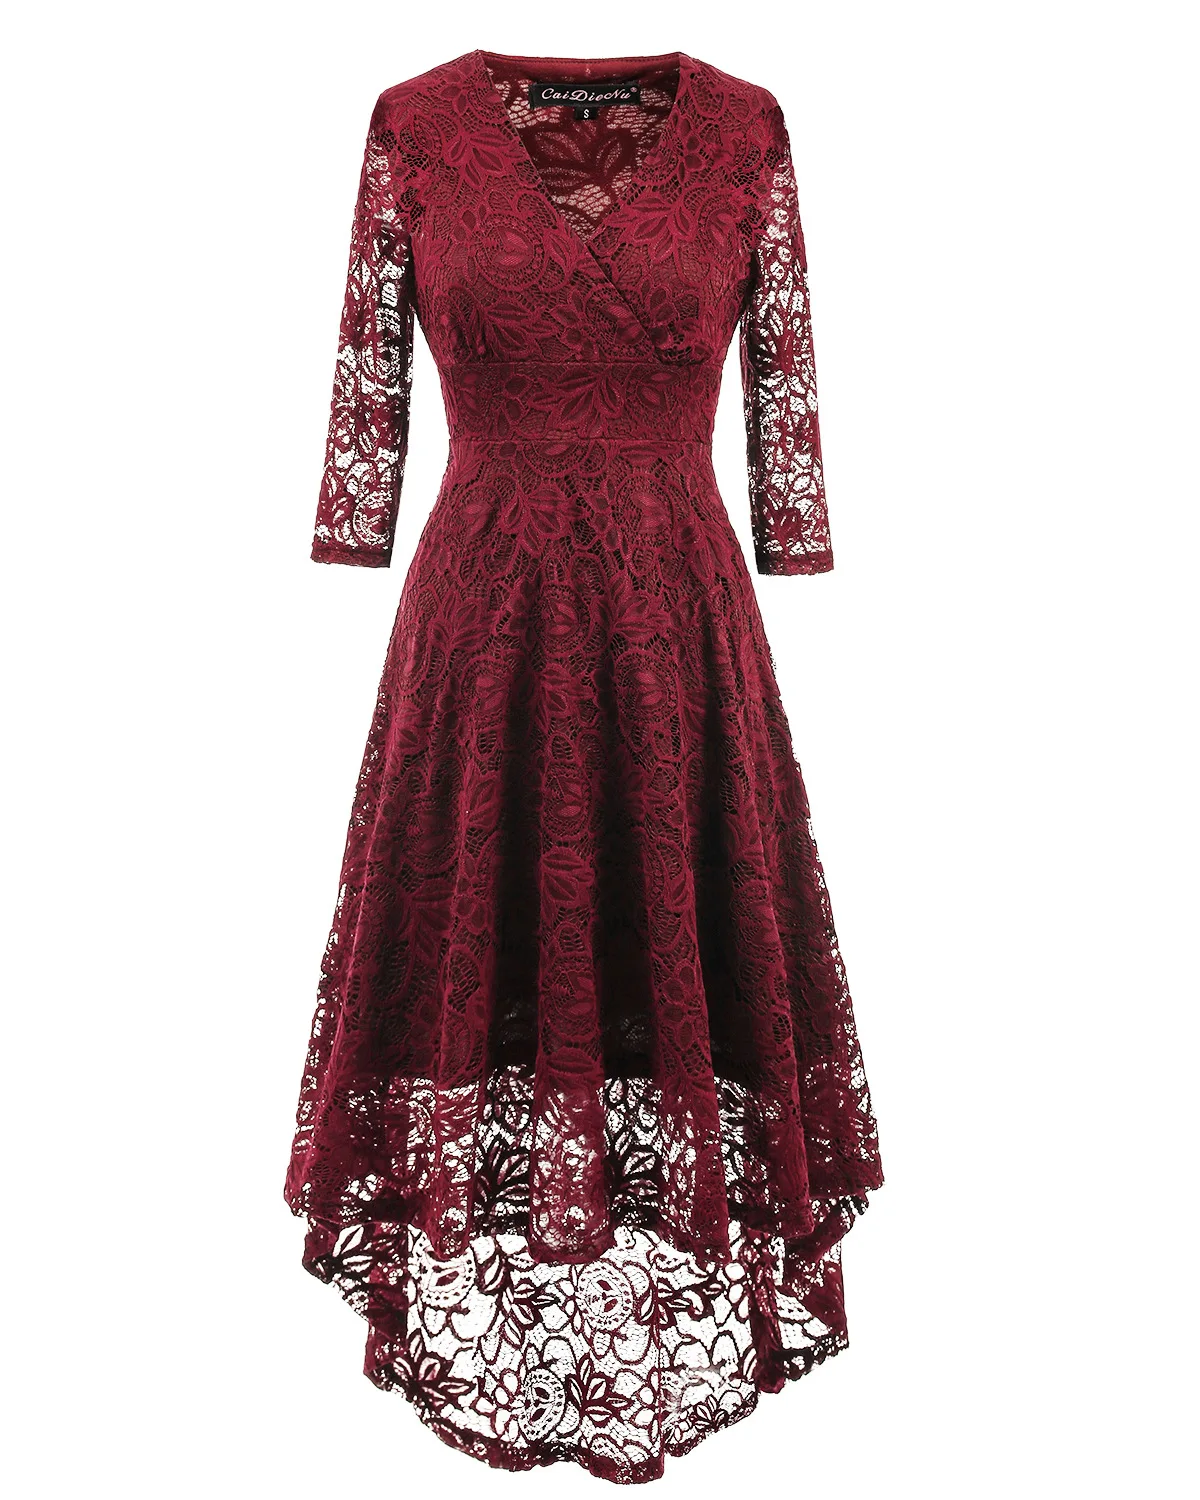 WEPBEL, женское летнее платье, Ретро стиль, 50-х, цветочное кружево, 3/4, длинный рукав, глубокий v-образный вырез, высокая талия, вечерние, коктейльное, миди, свободное платье - Цвет: Бургундия